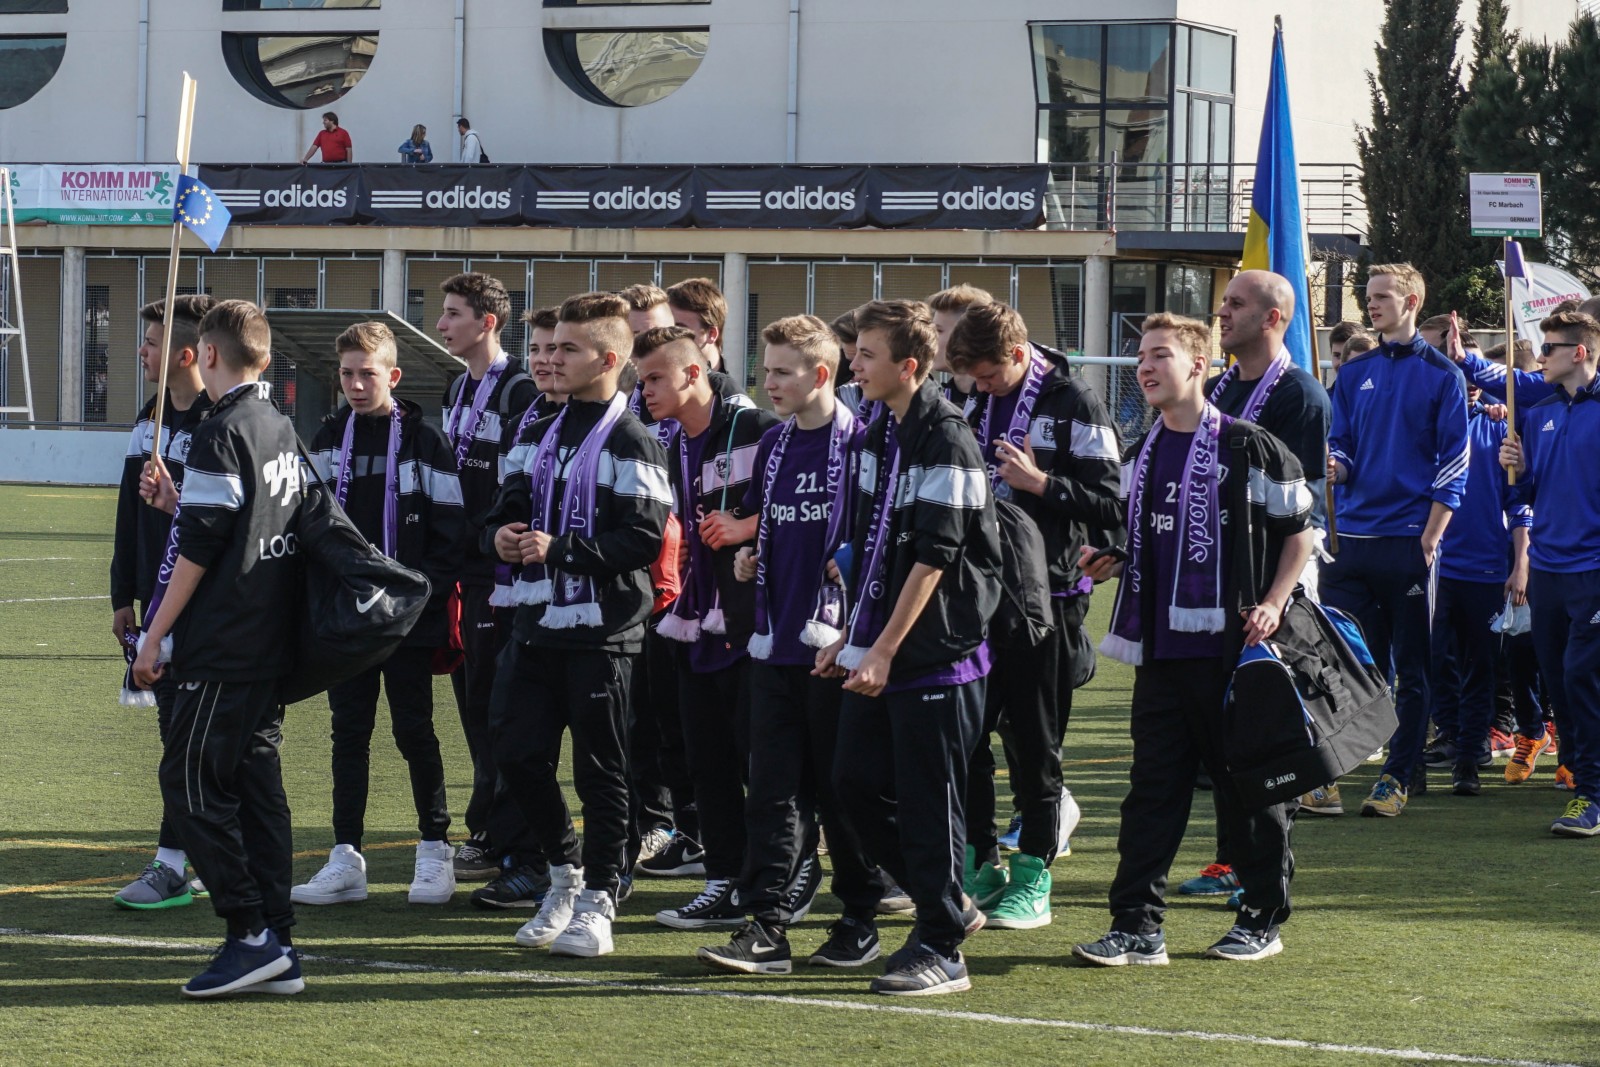 Einheitlicher Trainingsanzug und VfL-Schal: So lief die C-Jugend zur Mannschaftspräsentation ein. Foto: VfL